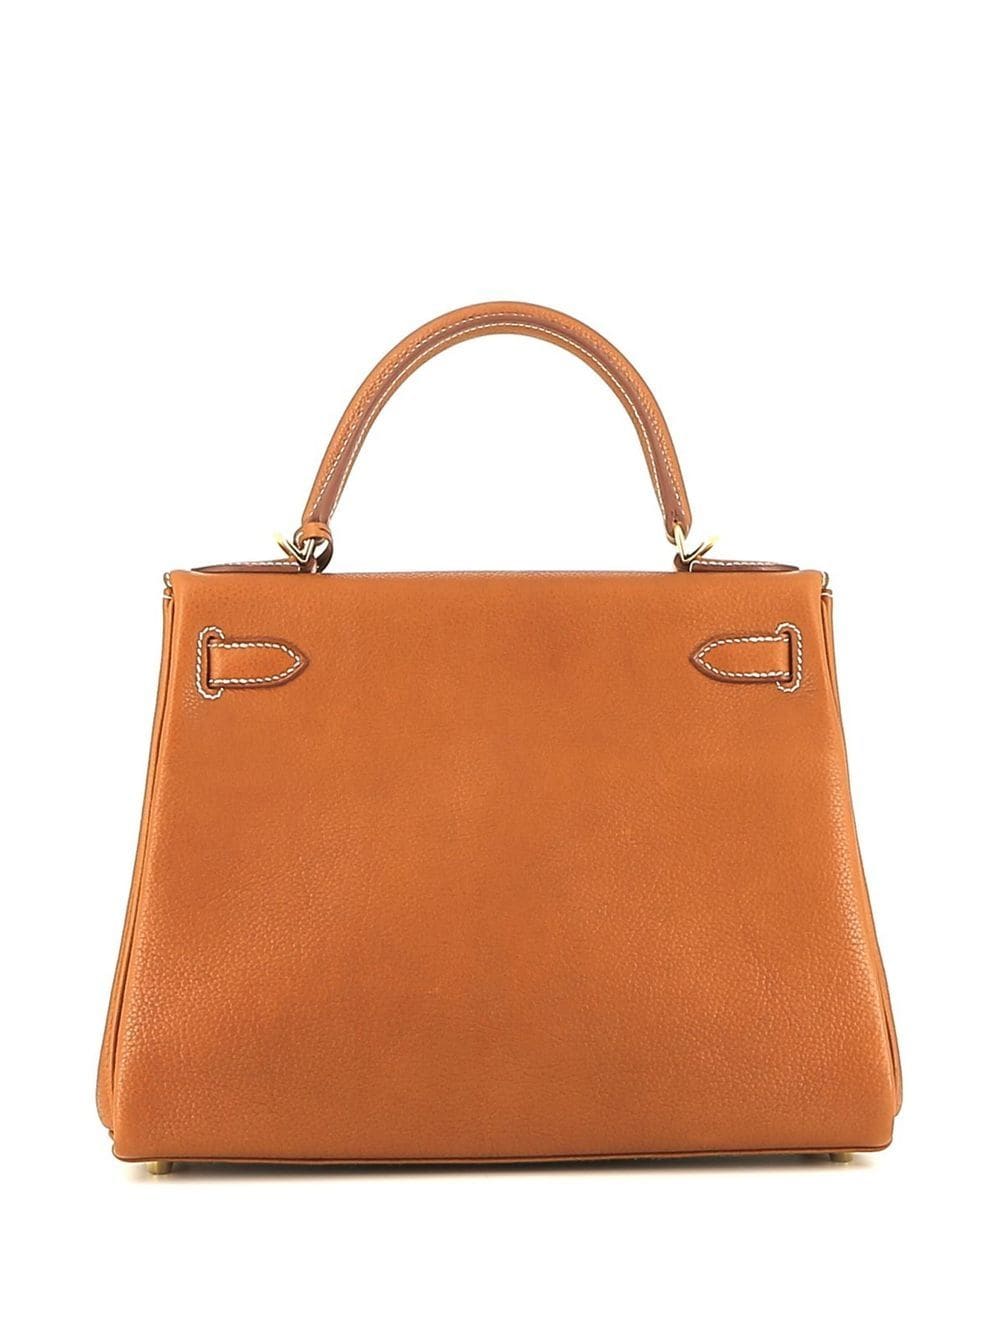 Image 2 of Hermès Pre-Owned 2021 Kelly 28 handbag